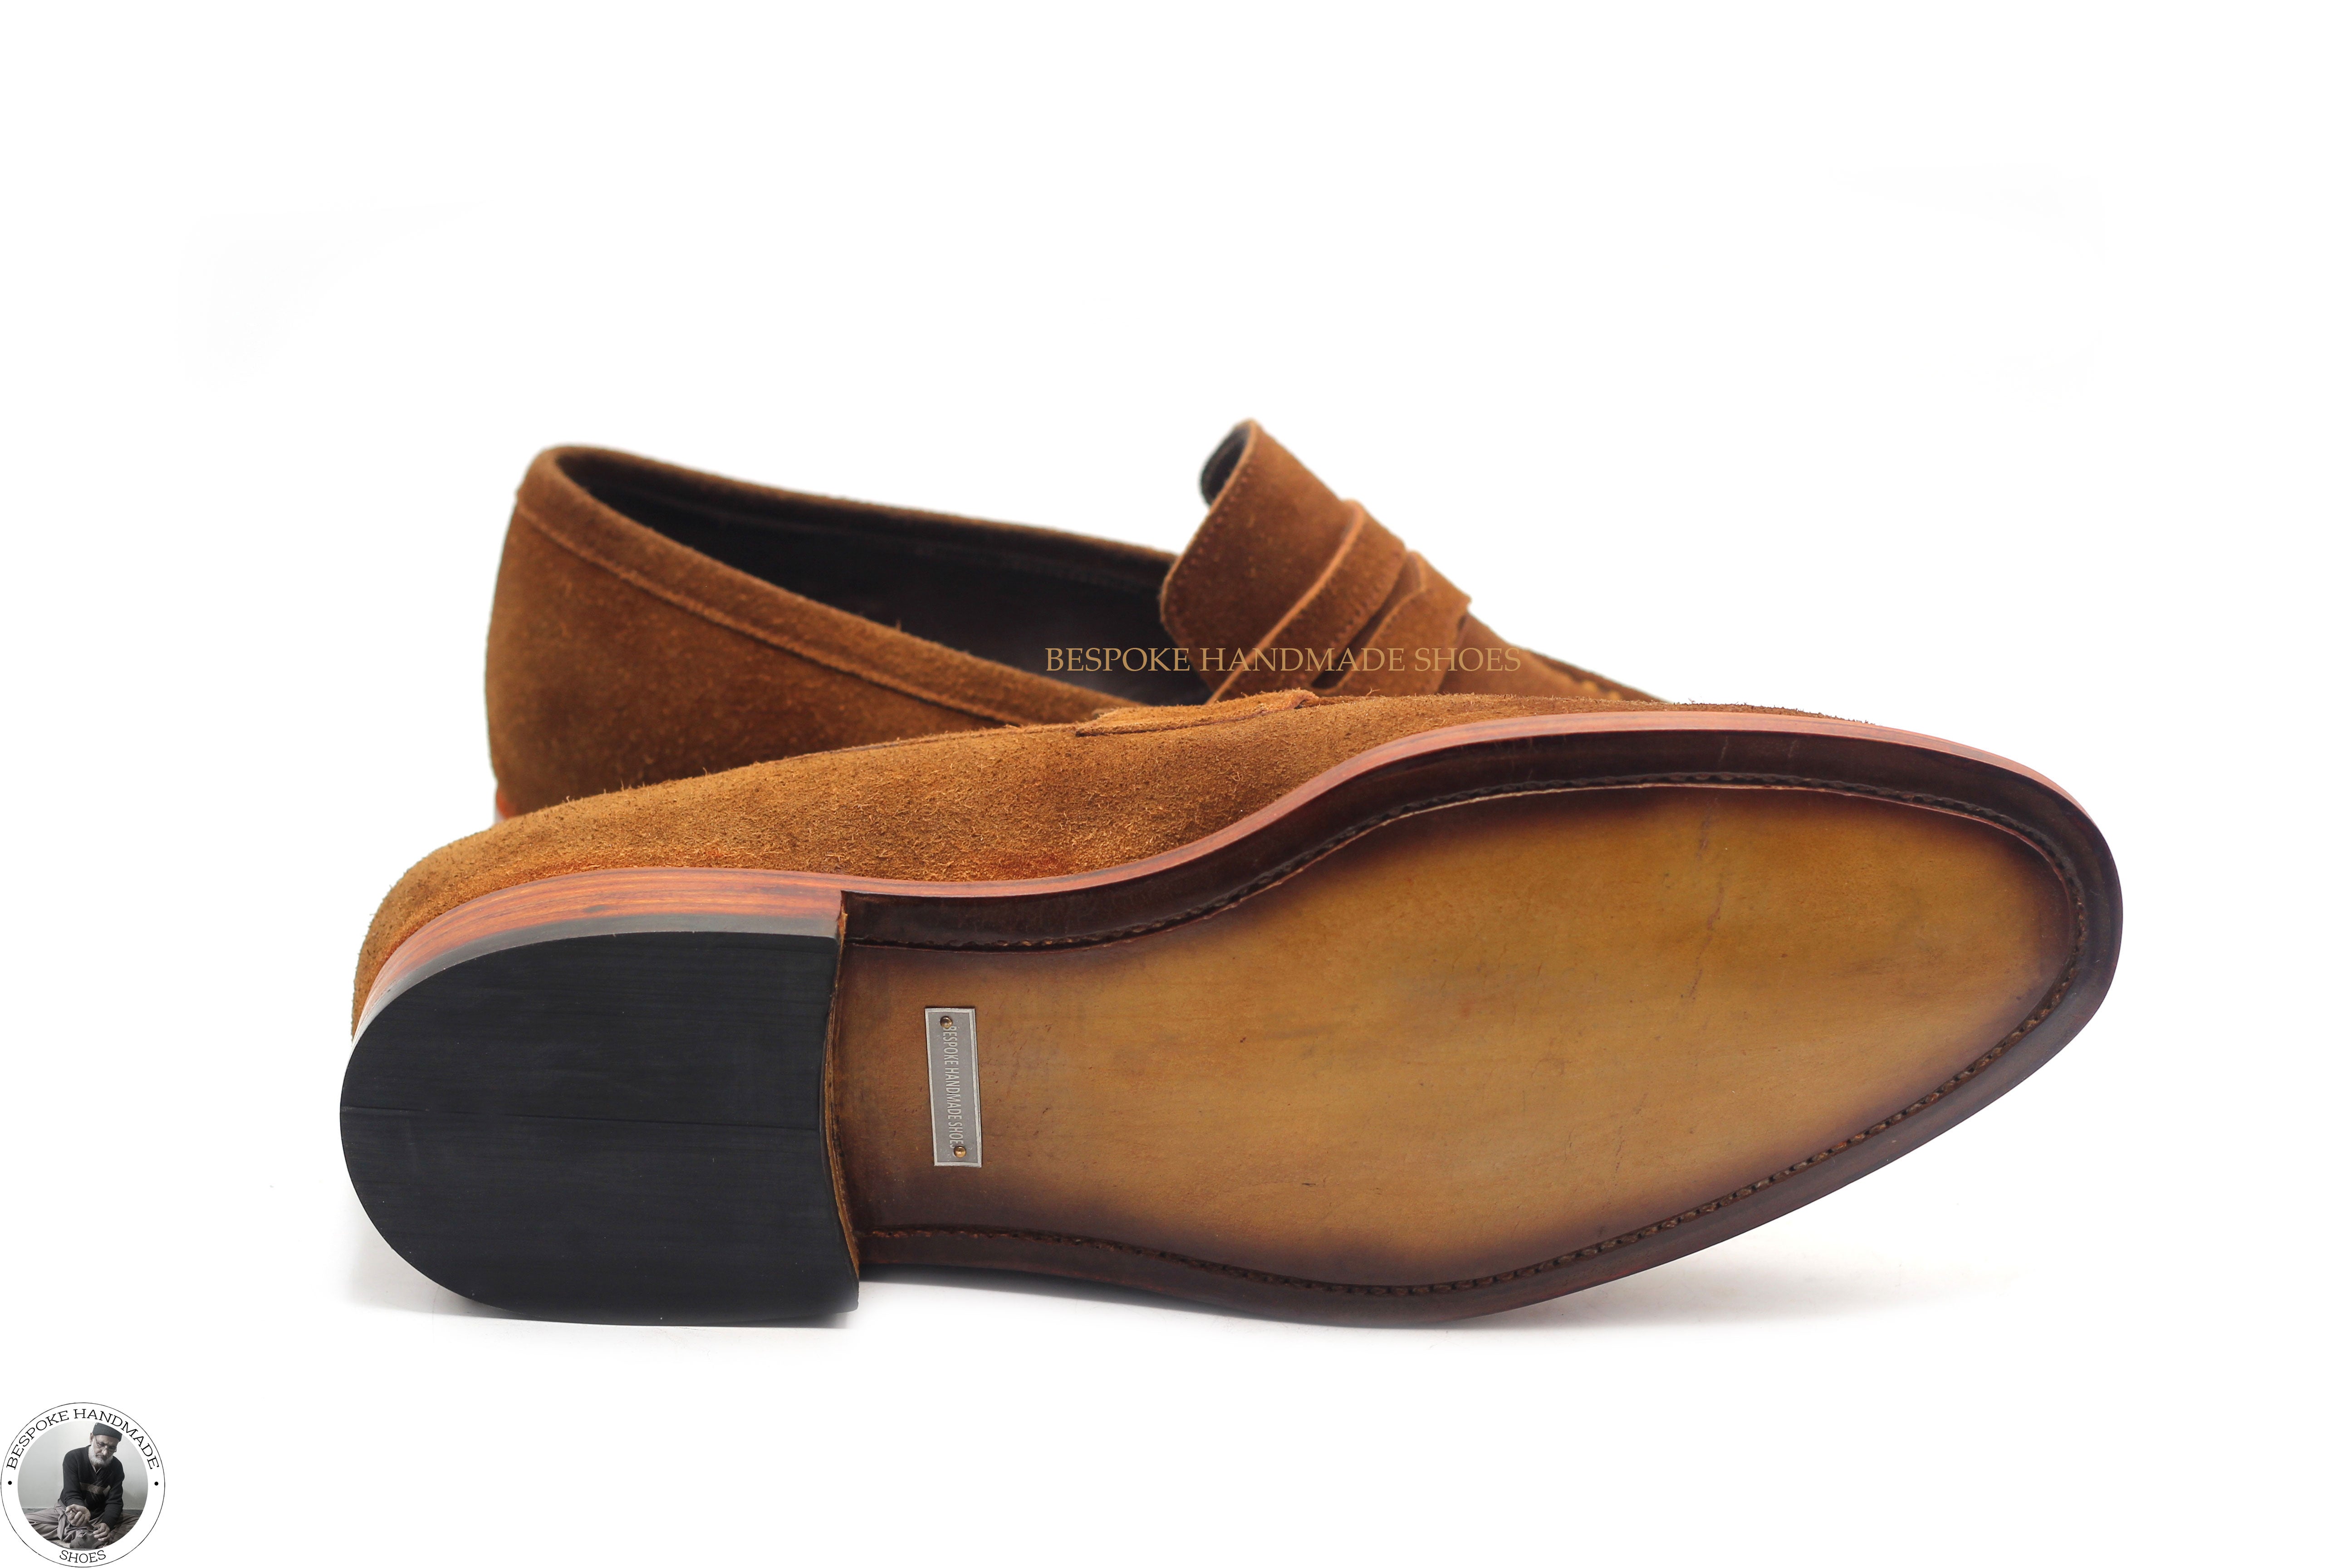 New Men's Handmade Brown Color Genuine Suede Slip On Moccasin Formal Shoes For Men's